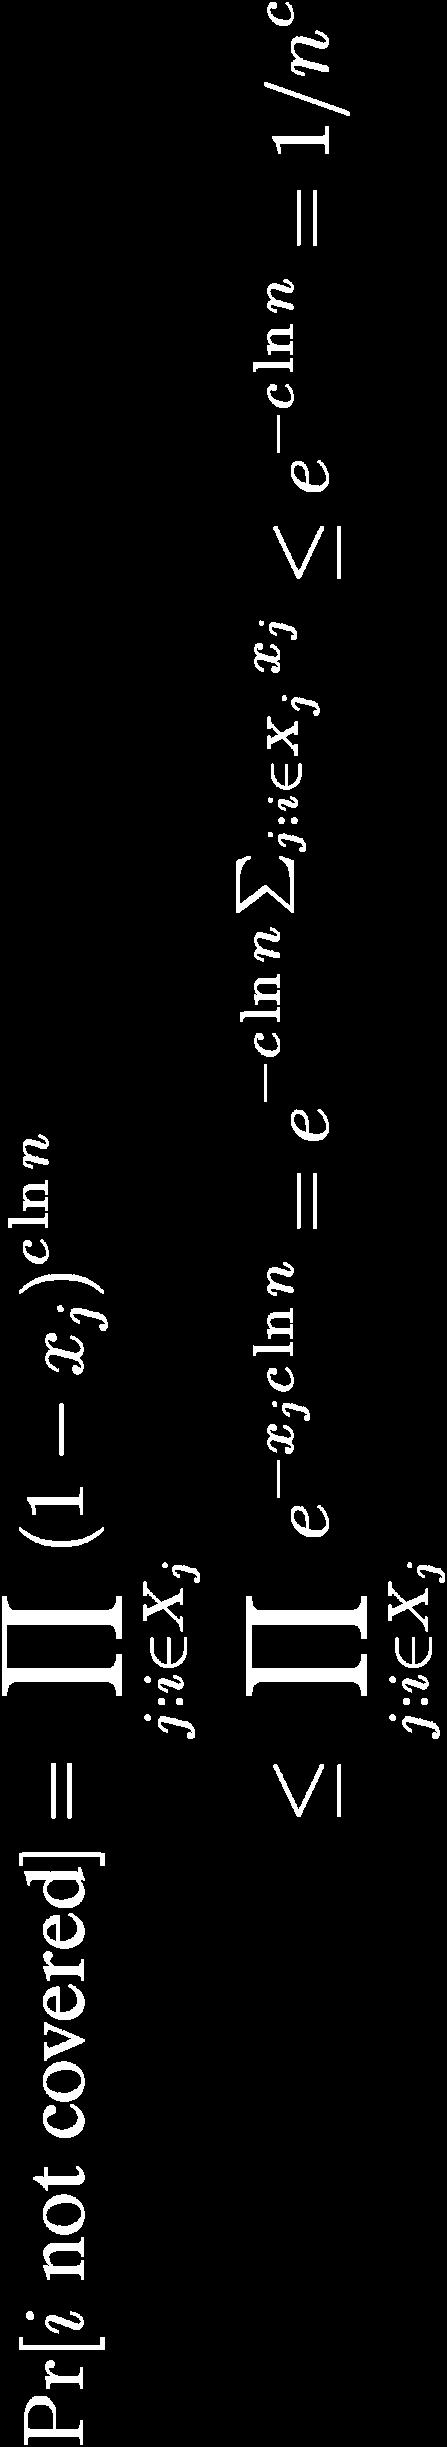 στοιχείο i, πιθανότητα να μην καλυφθεί το i 1/n c Πιθανότητα να υπάρχει στοιχείο ακάλυπτο 1/n c 1 Κάτω